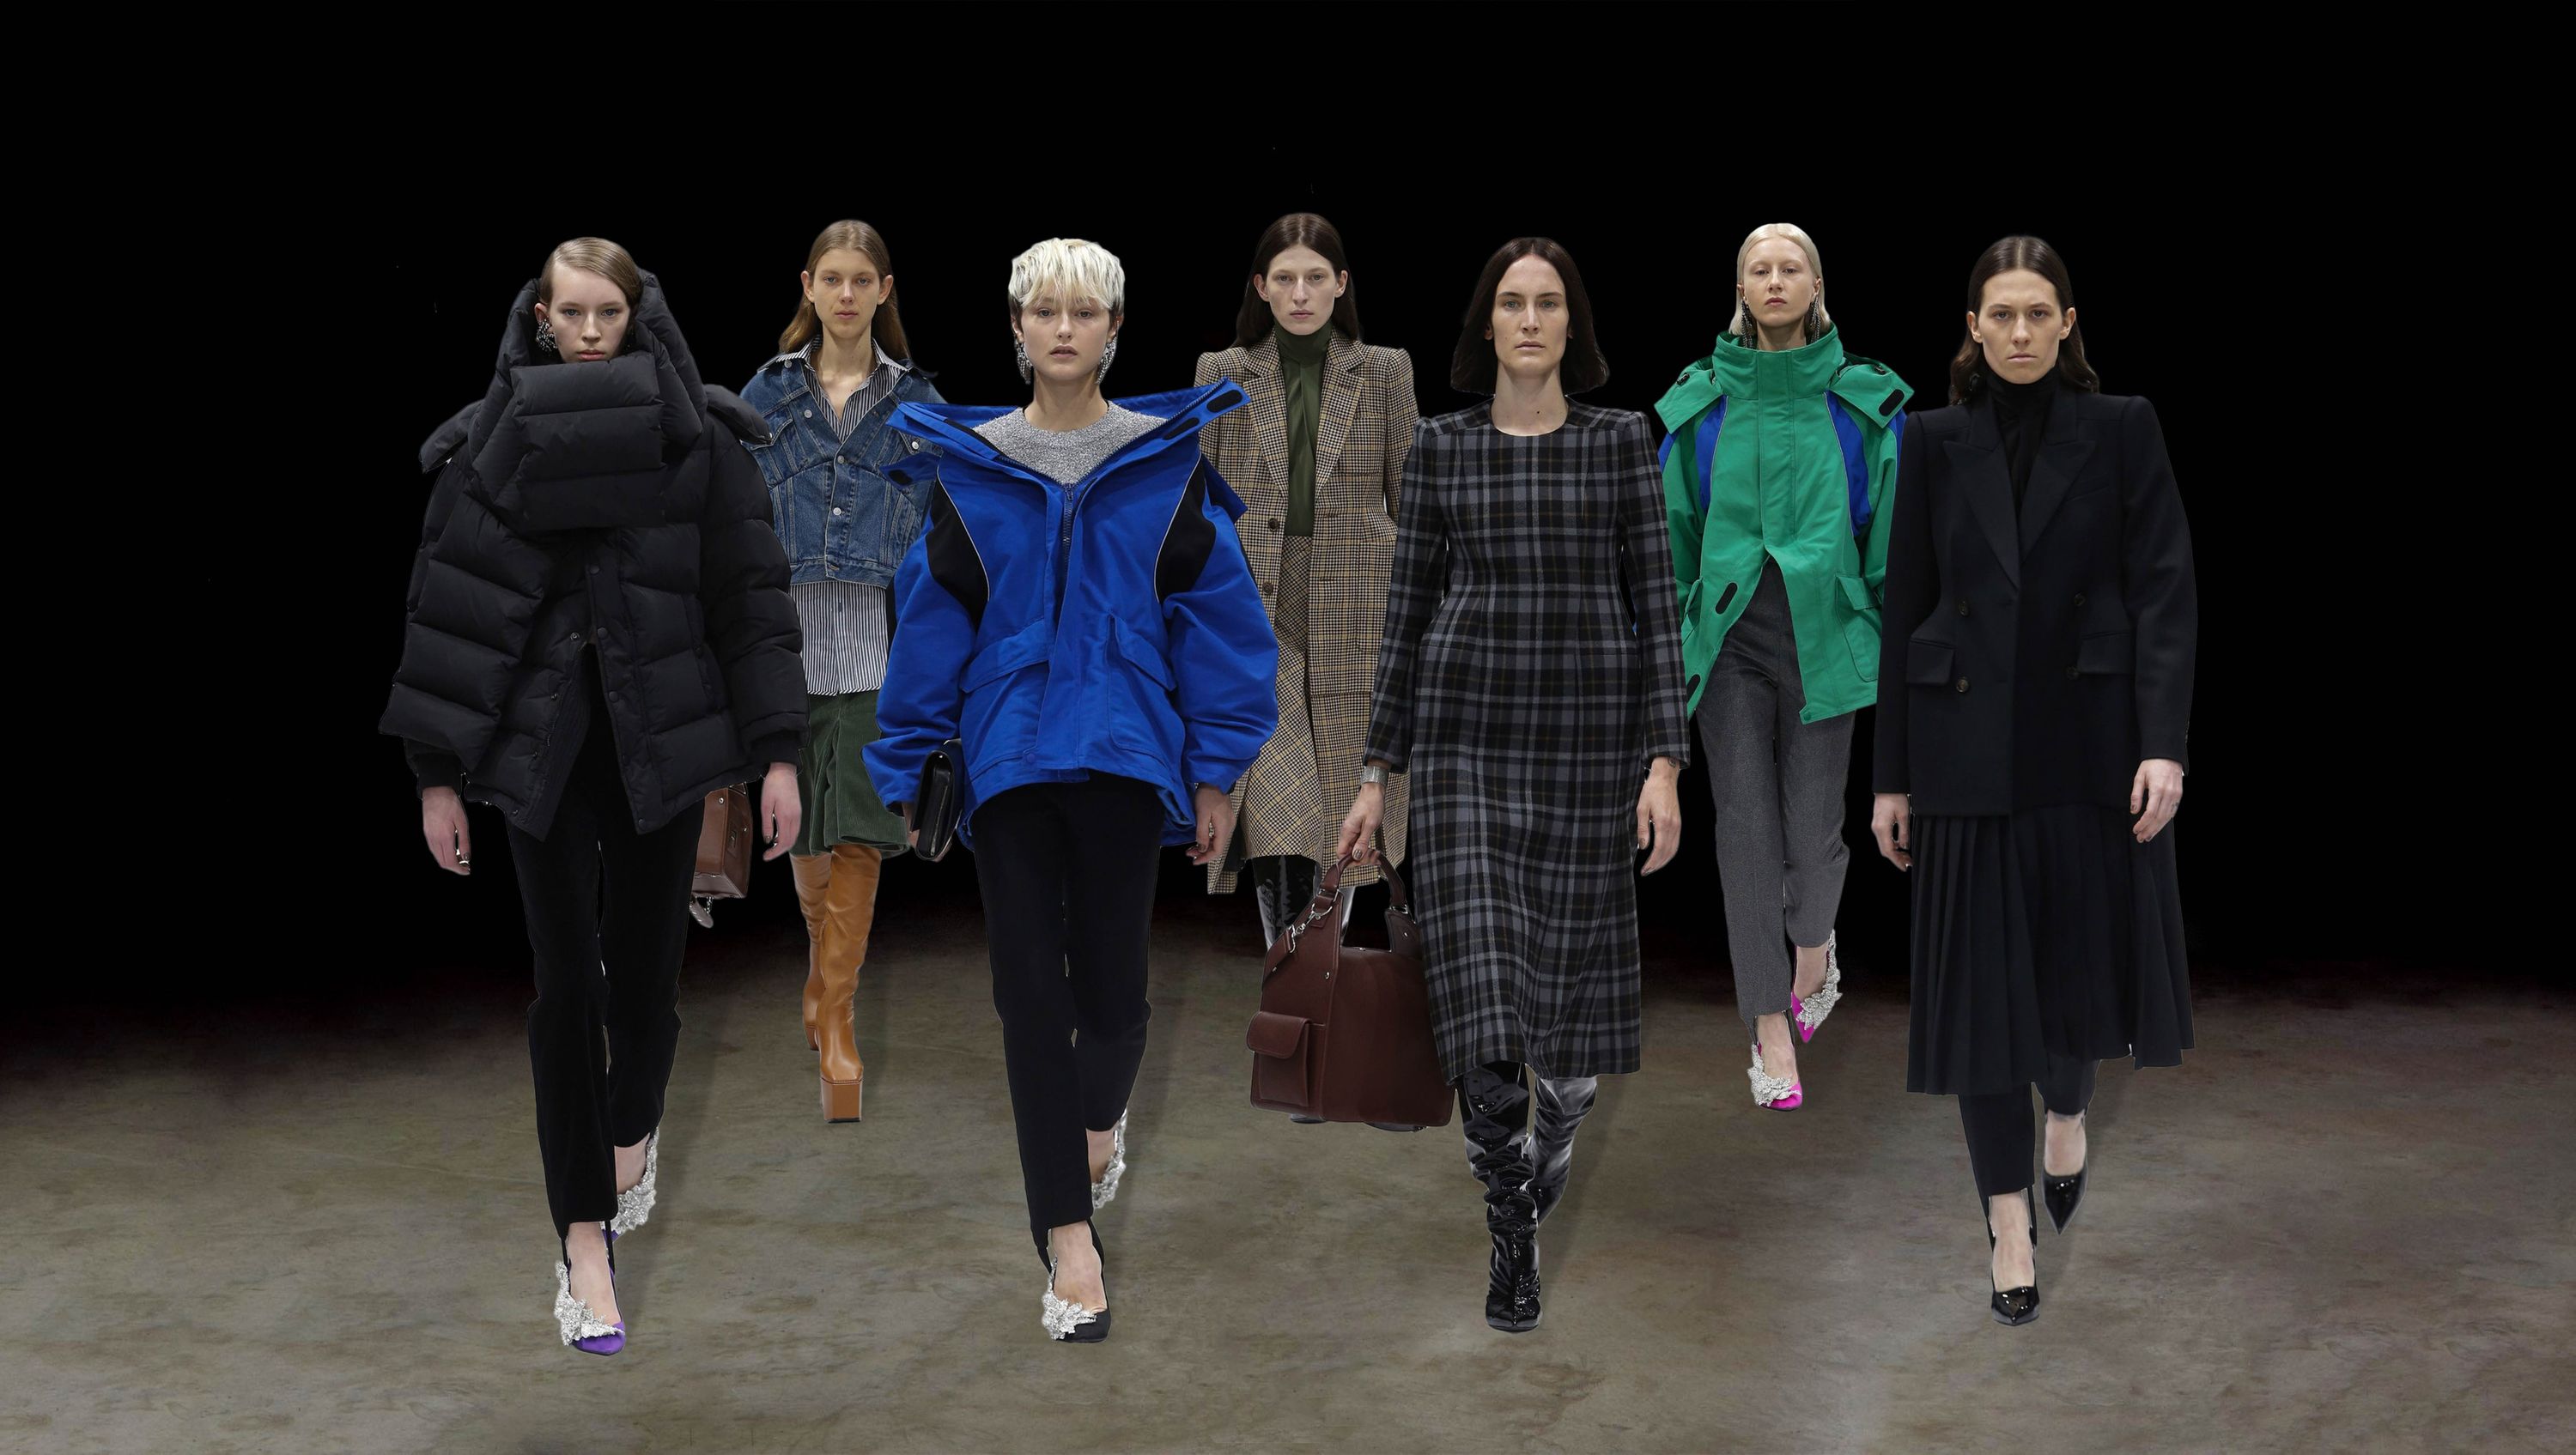 Nicolas Ghesquière's top five collections for Balenciaga, Fashion